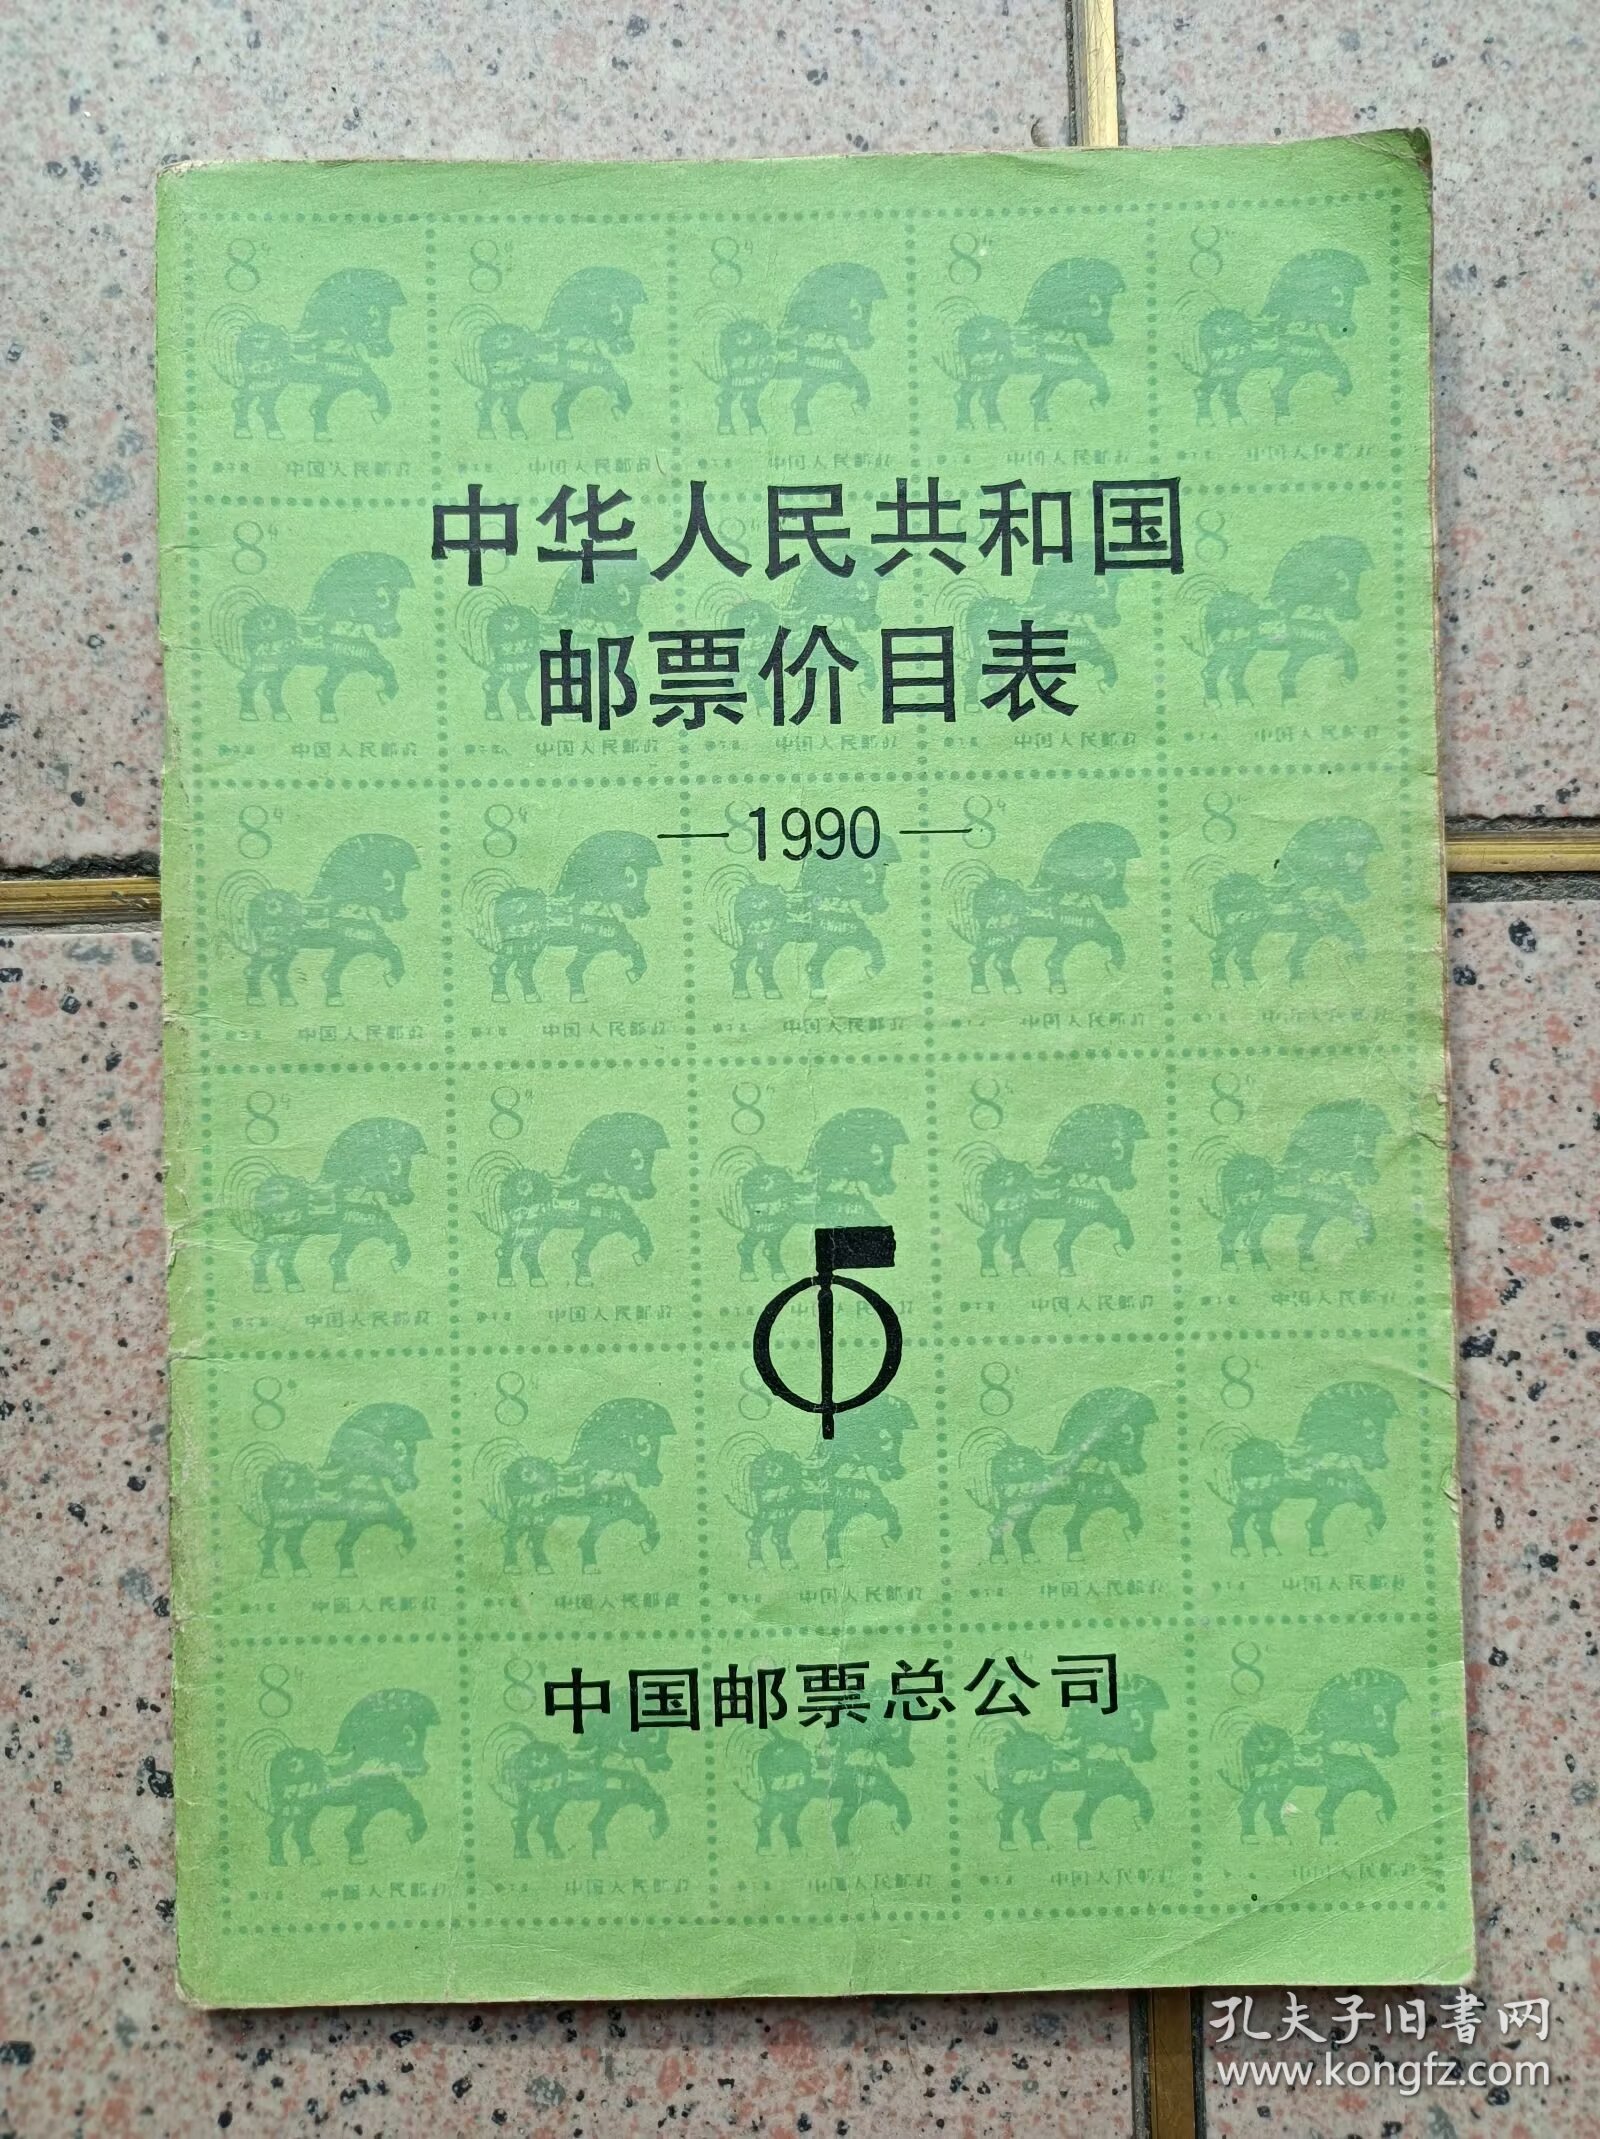 中华人共和国邮票价目表1990